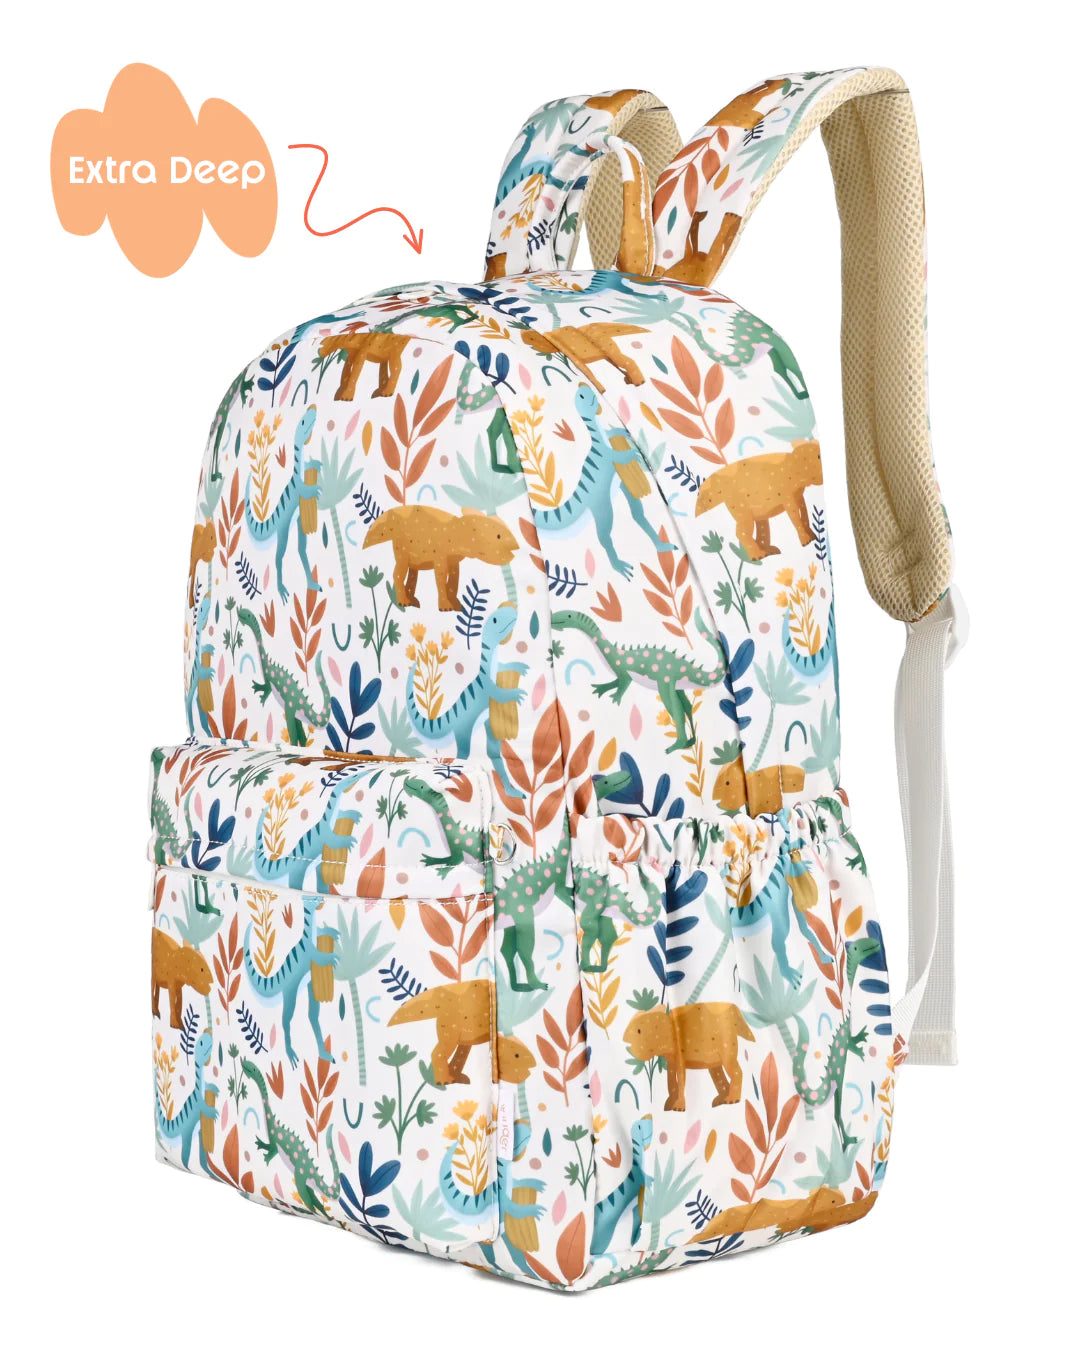 Dinoroar Junior Kindy/School Backpack - Extra Deep – Our Little Darlings